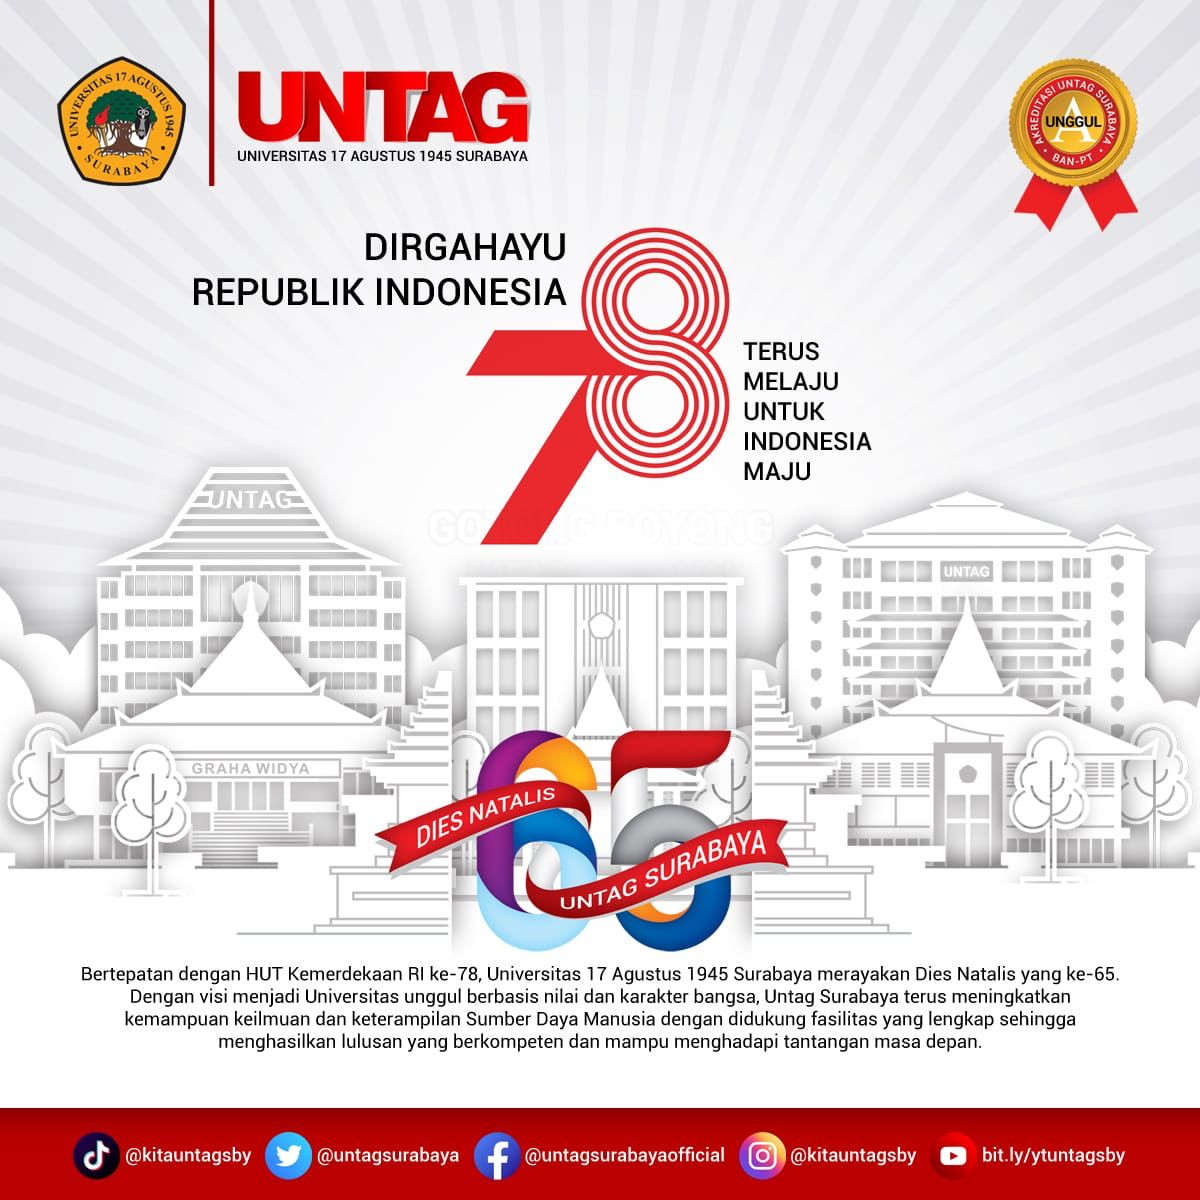 DIRGAHAYU REPUBLIK INDONESIA KE-78 DAN DIES NATALIS UNIVERSITAS 17 AGUSTUS 1945 SURABAYA YANG KE-65